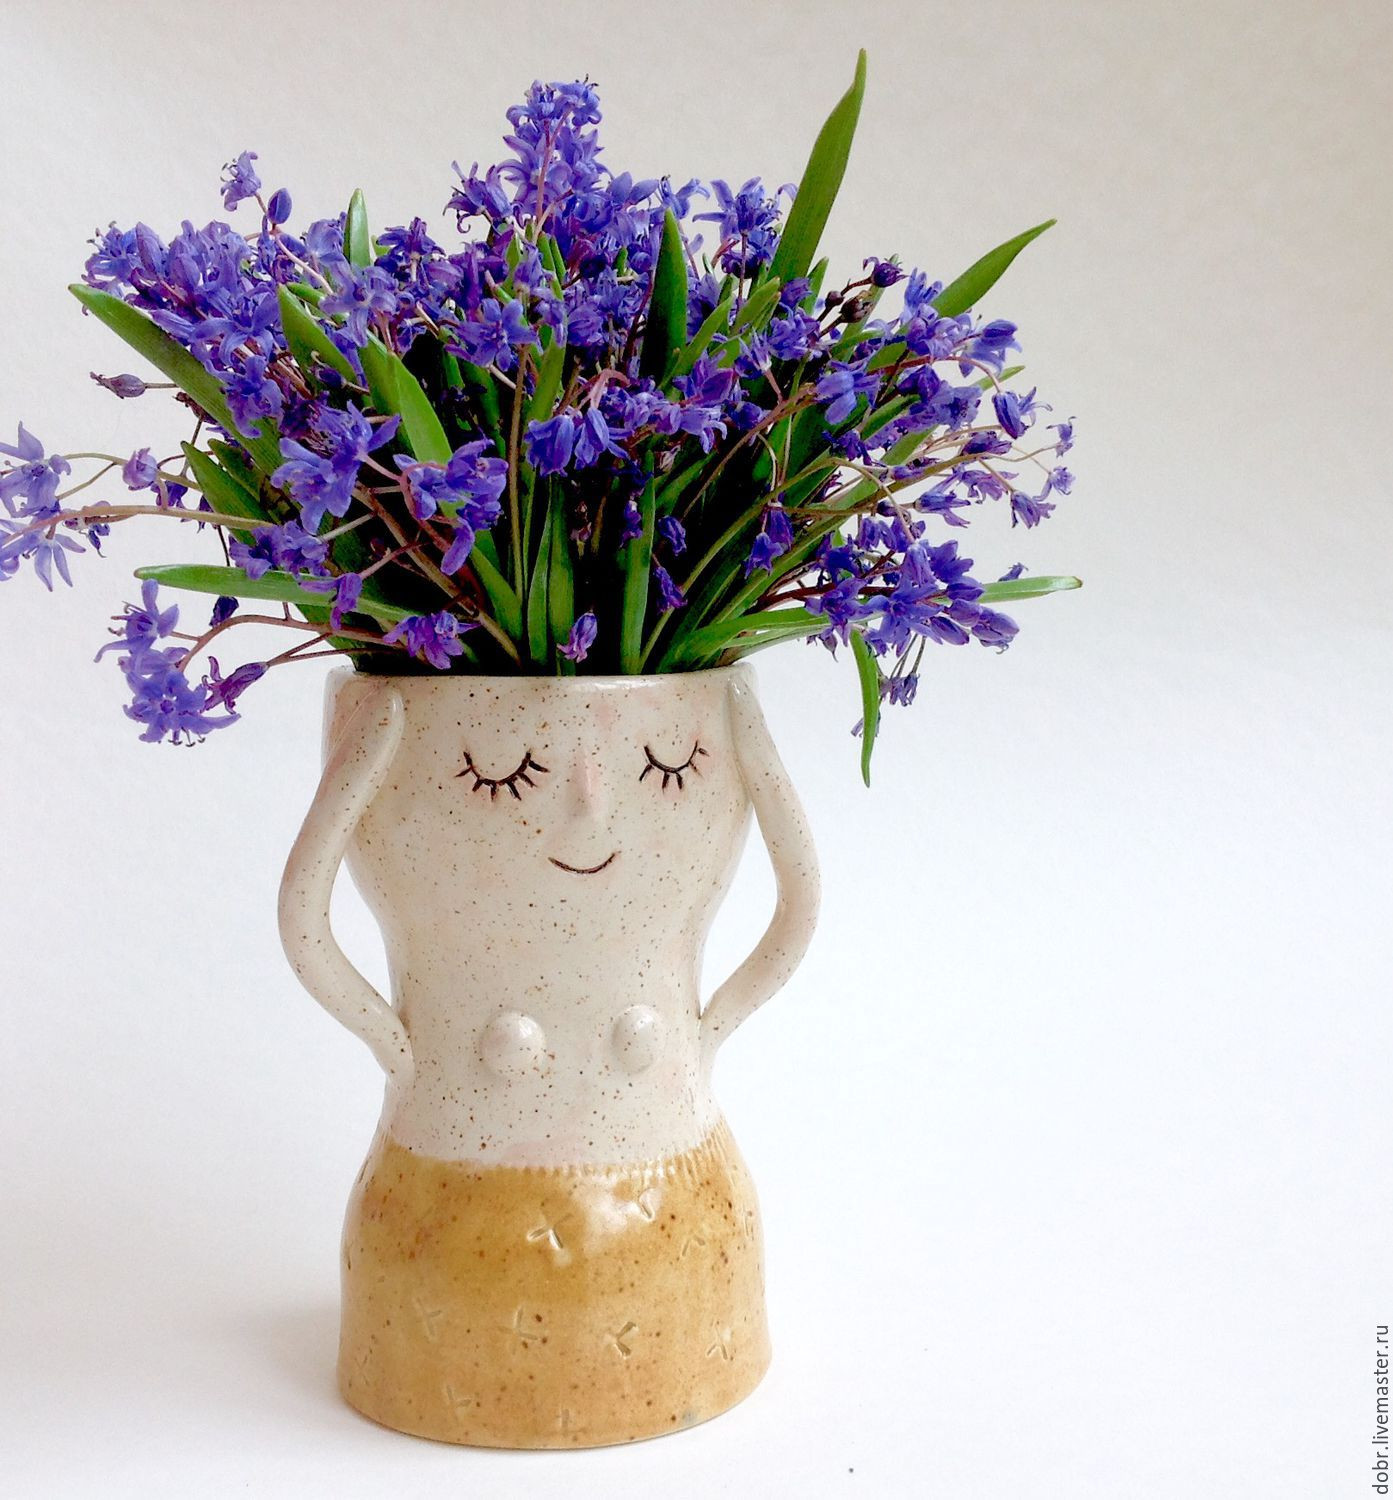 buy vase online of ceramic vase shop online on livemaster with shipping 2jehdcom pertaining to ceramic vase natalia dobrzhanskayadobrceramics online shopping on my